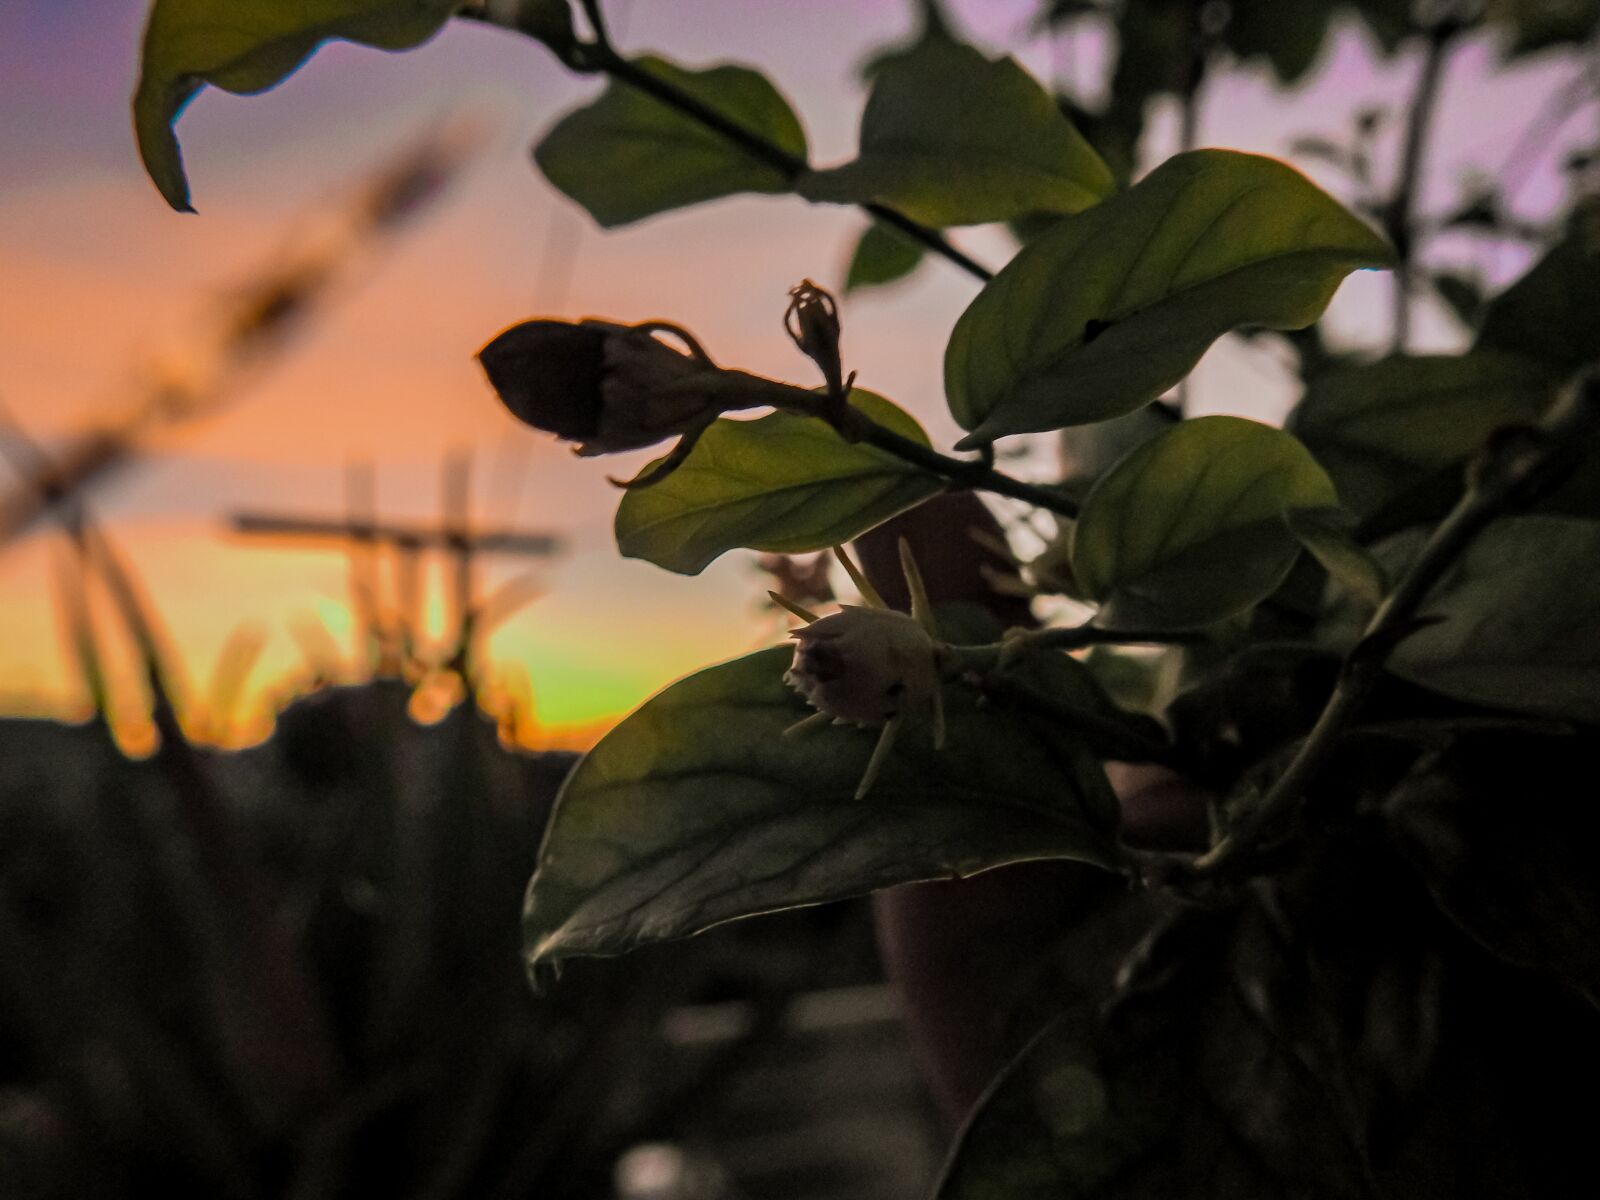 Nikon Coolpix P900 sample photo. Sunset time click, sunset photography